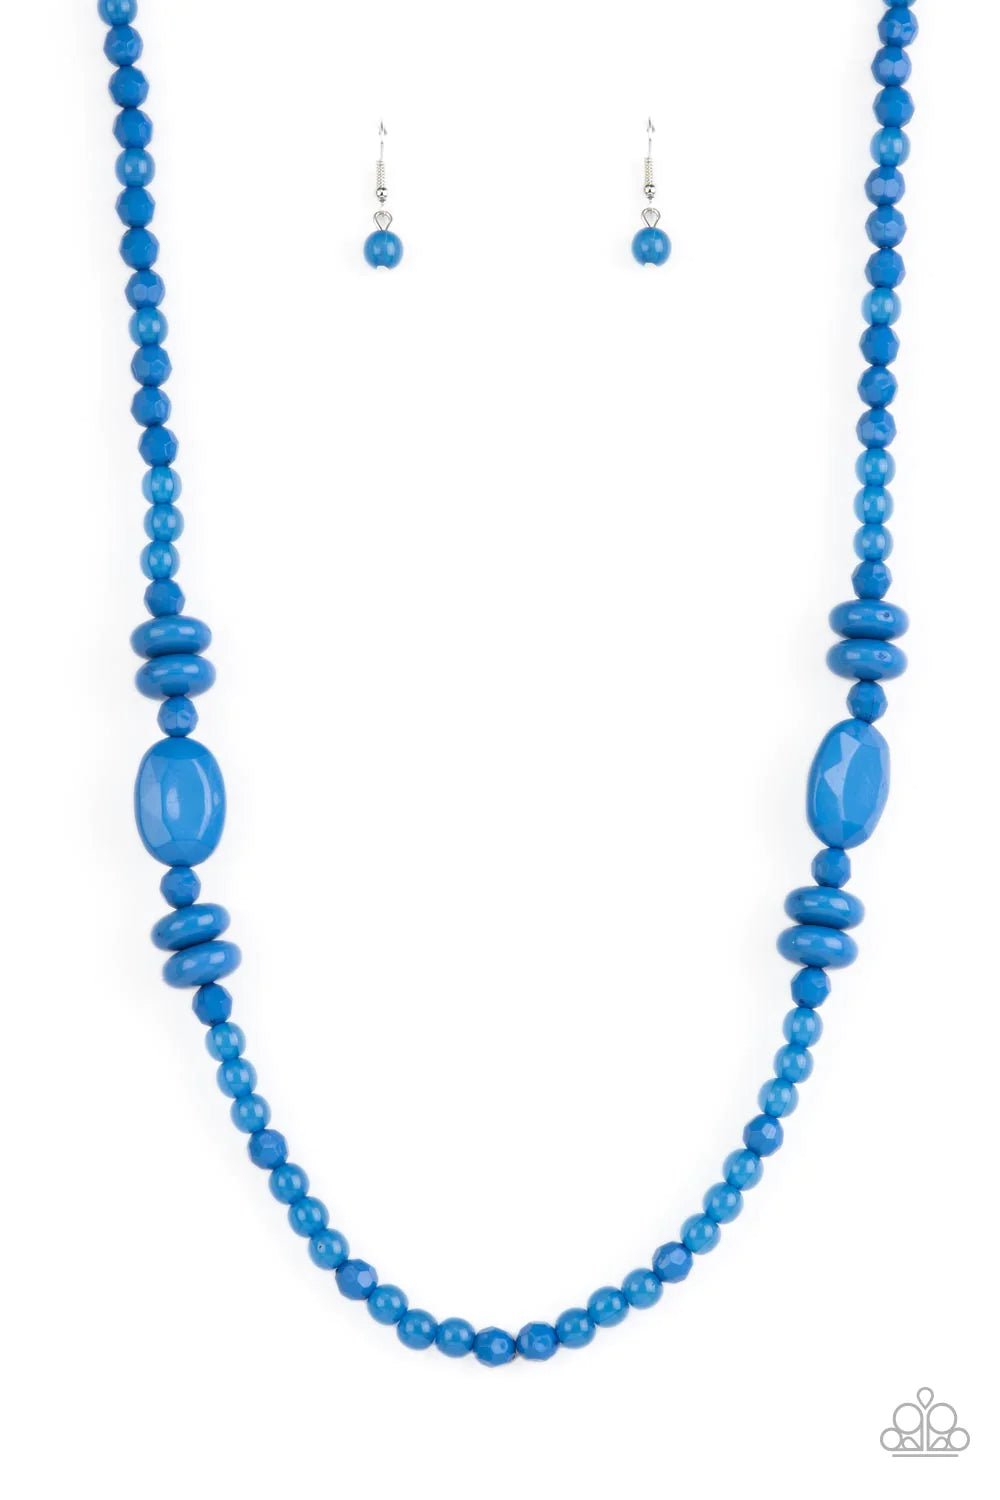 Tropical Tourist - Blue Necklace